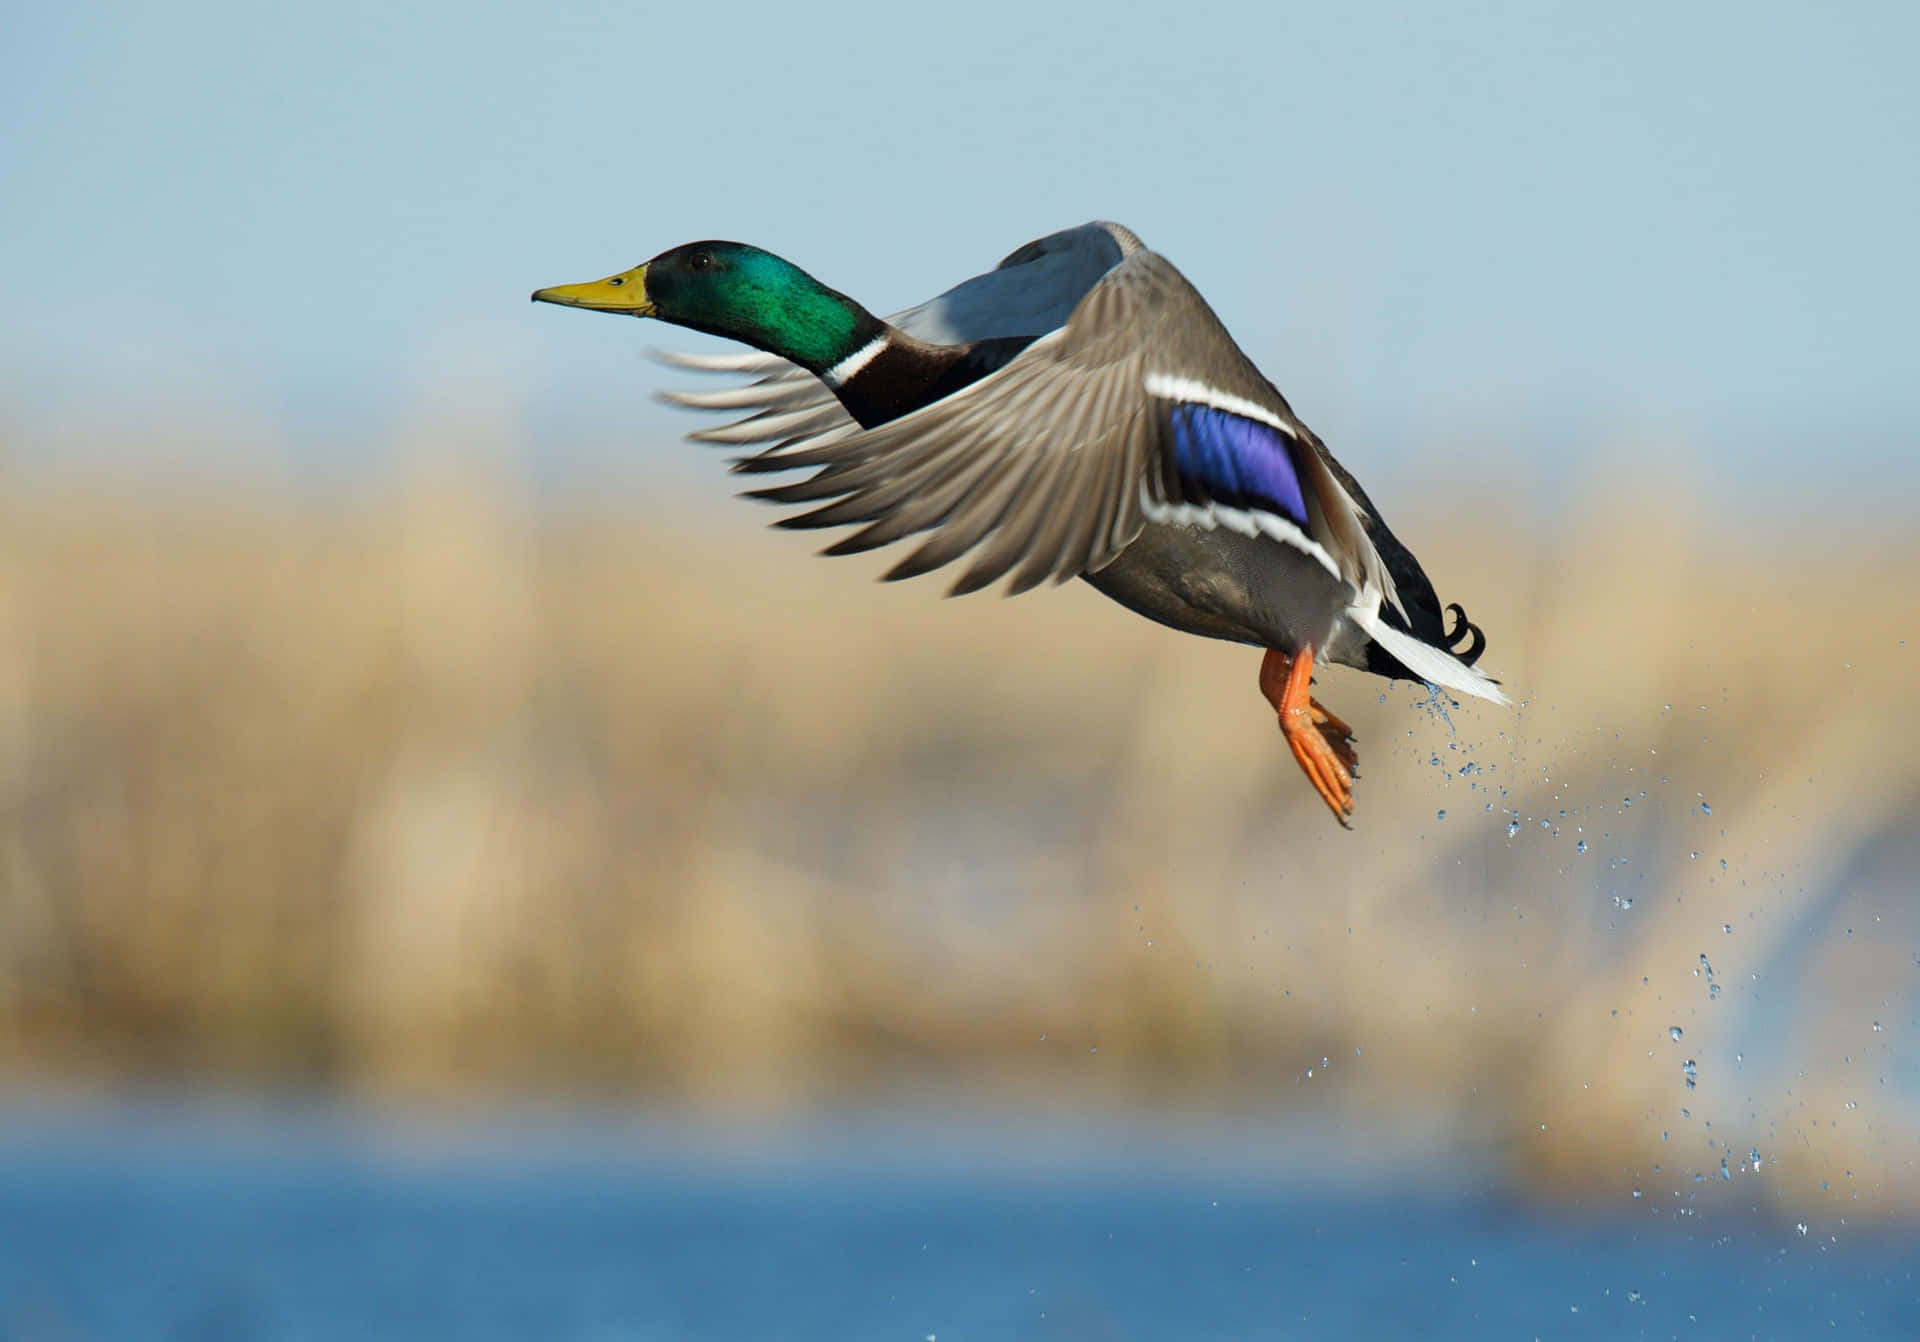 Mallard Duck In Flight.jpg Wallpaper